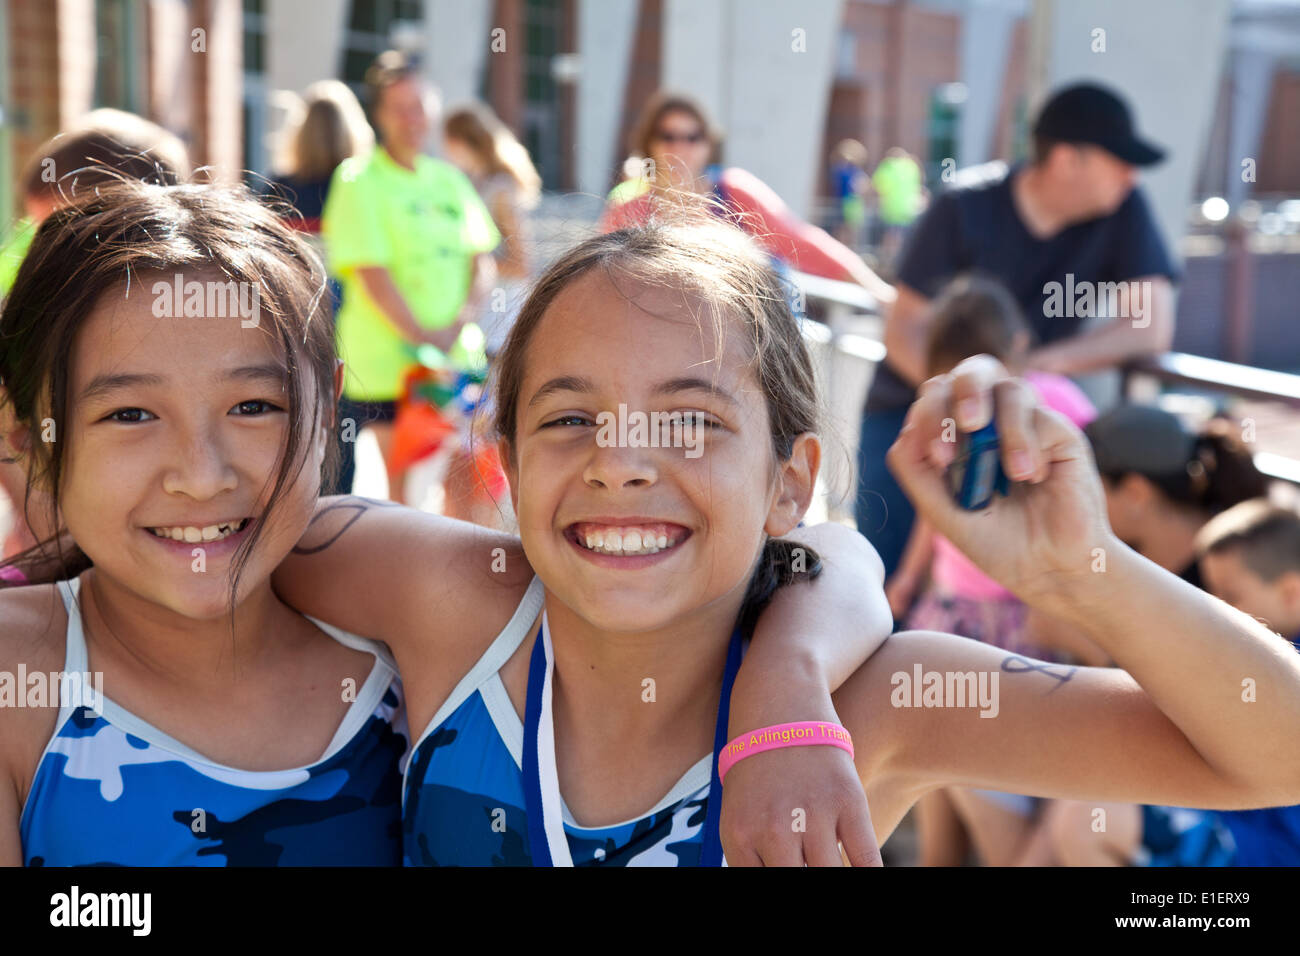 Arlington, Virginia, EE.UU. El 1 de junio de 2014. Sofia Rosato (8, derecha) y Sophie Bolin (9, izquierda) acaba de terminar su primer triatlón. El Arlington Club Triatlón organiza el primer triatlón juvenil en Arlington, Virginia. El evento fue parte de la Juventud de Arlington Festival Multisport Foto de stock